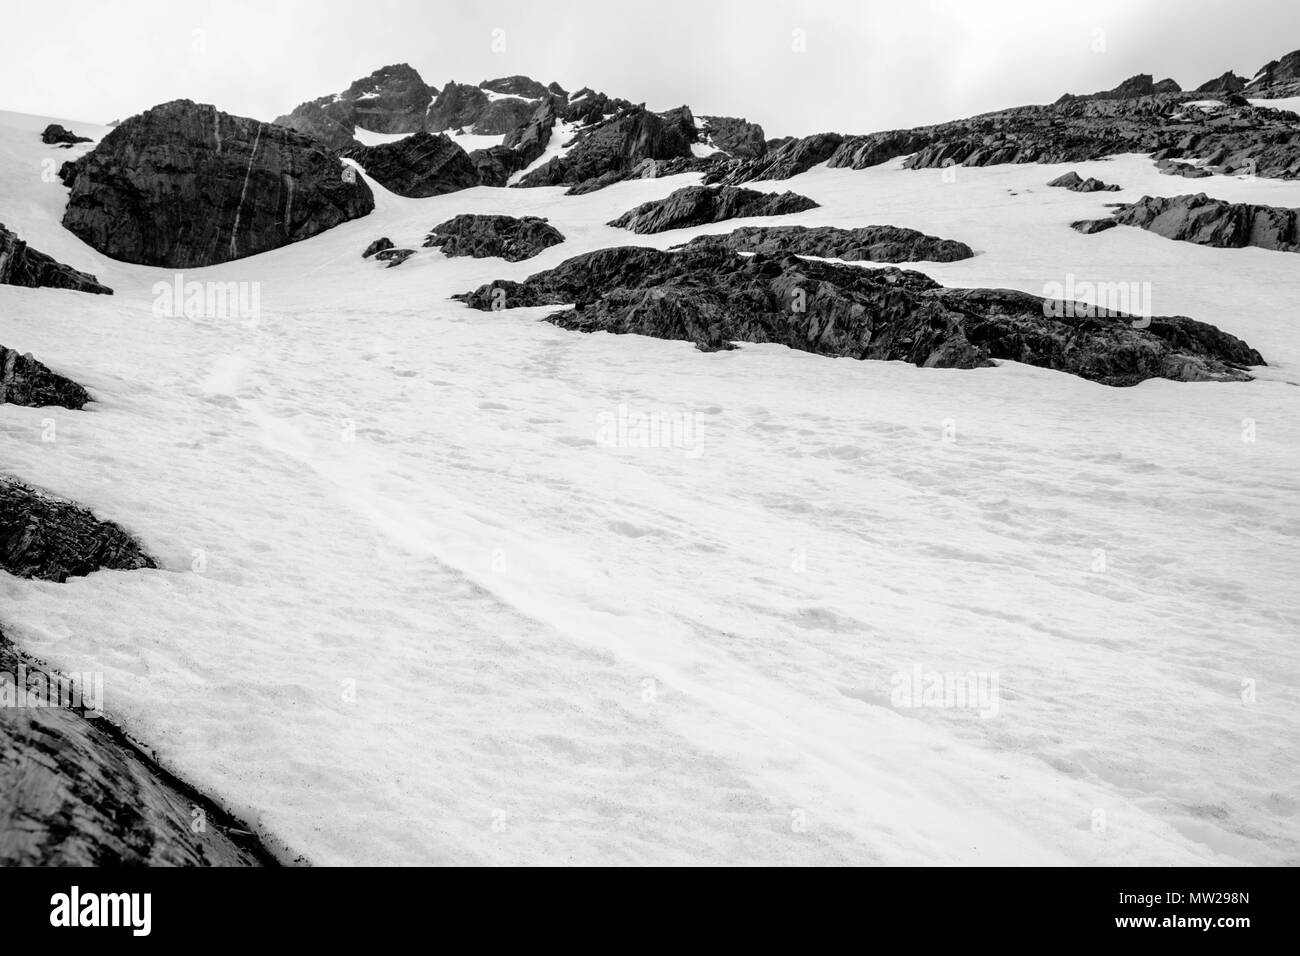 Huellas en la nieve del glaciar Martial llegar a la cima de la montaña. El glaciar se encuentra cerca de Ushuaia y ofrece panorámicas únicas. Foto de stock